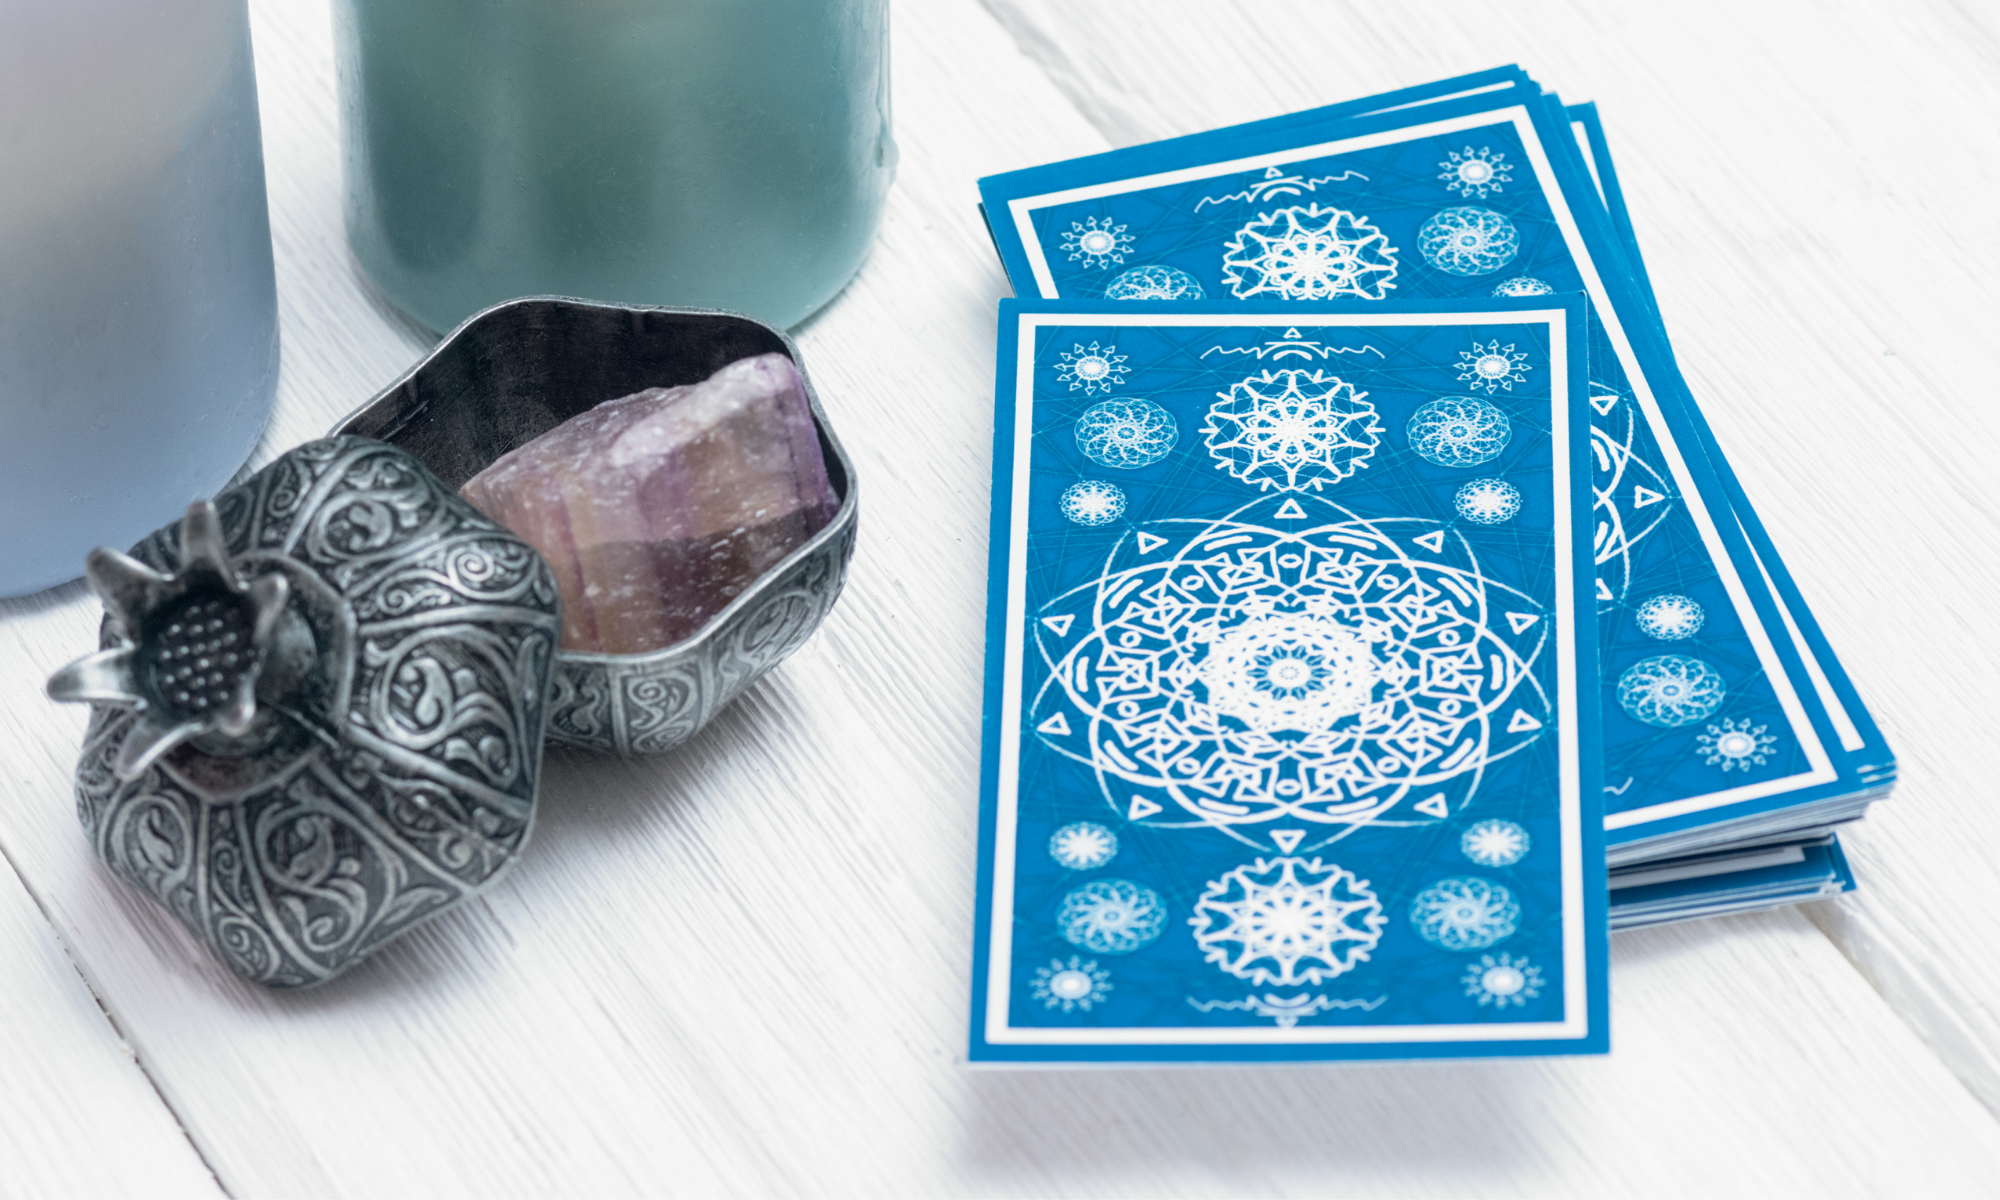 Golden Light Healing - Tarot Cards